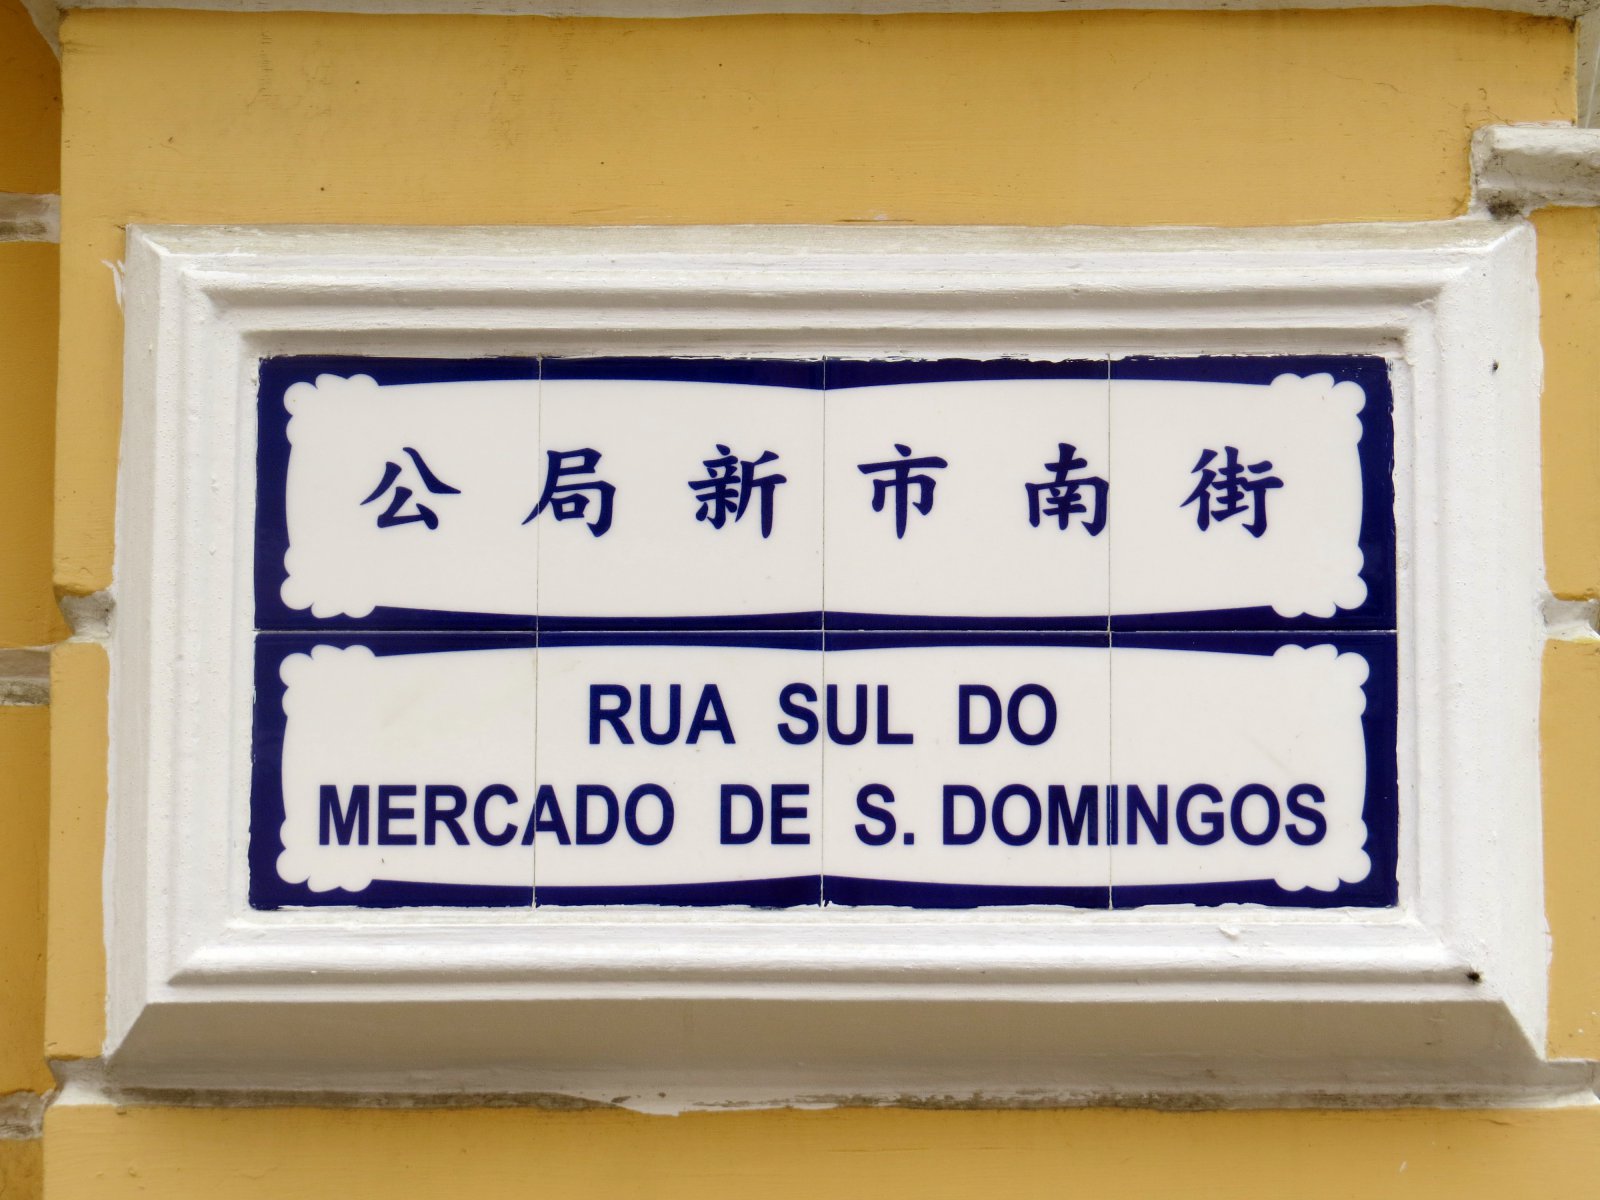 Macau, 2012